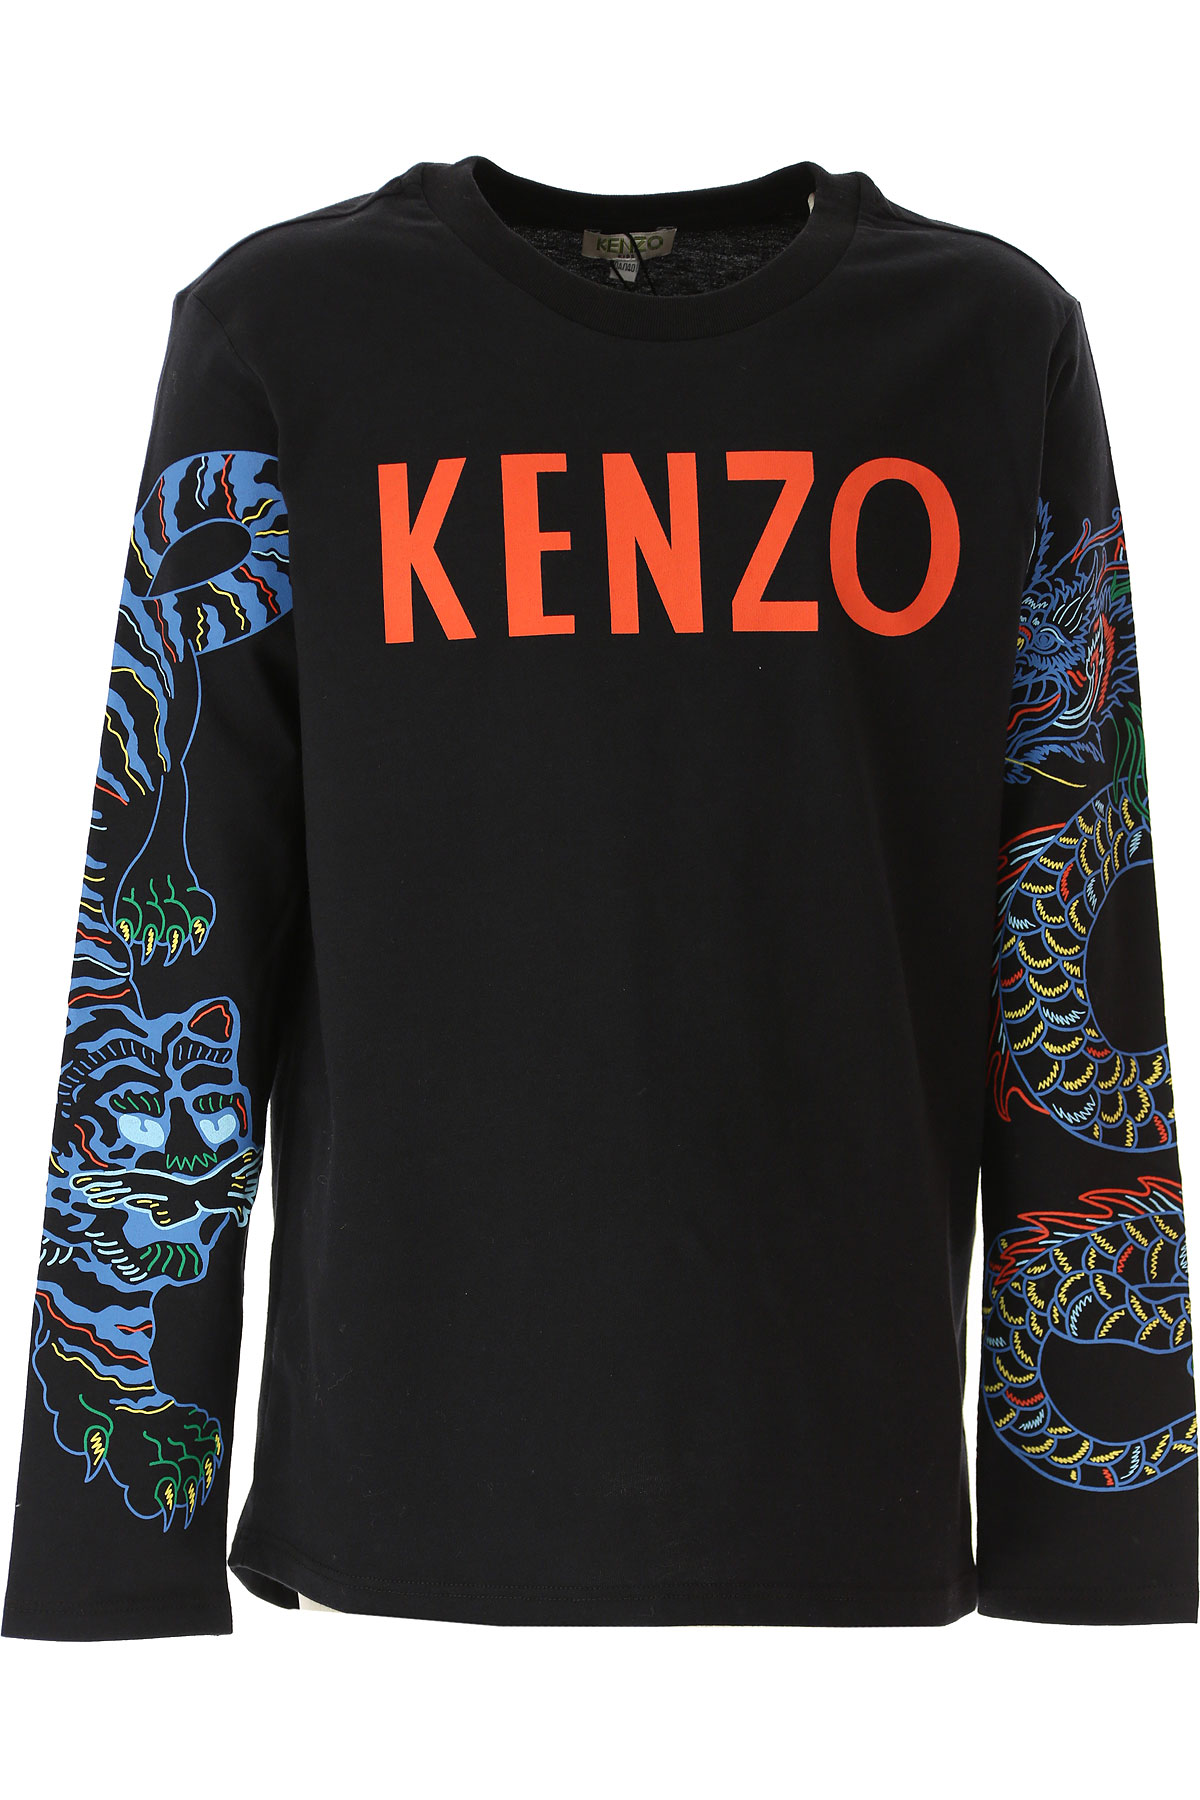 Kenzo Kinder T-Shirt für Jungen Günstig im Sale, Schwarz, Baumwolle, 2017, 10Y 12Y 8Y